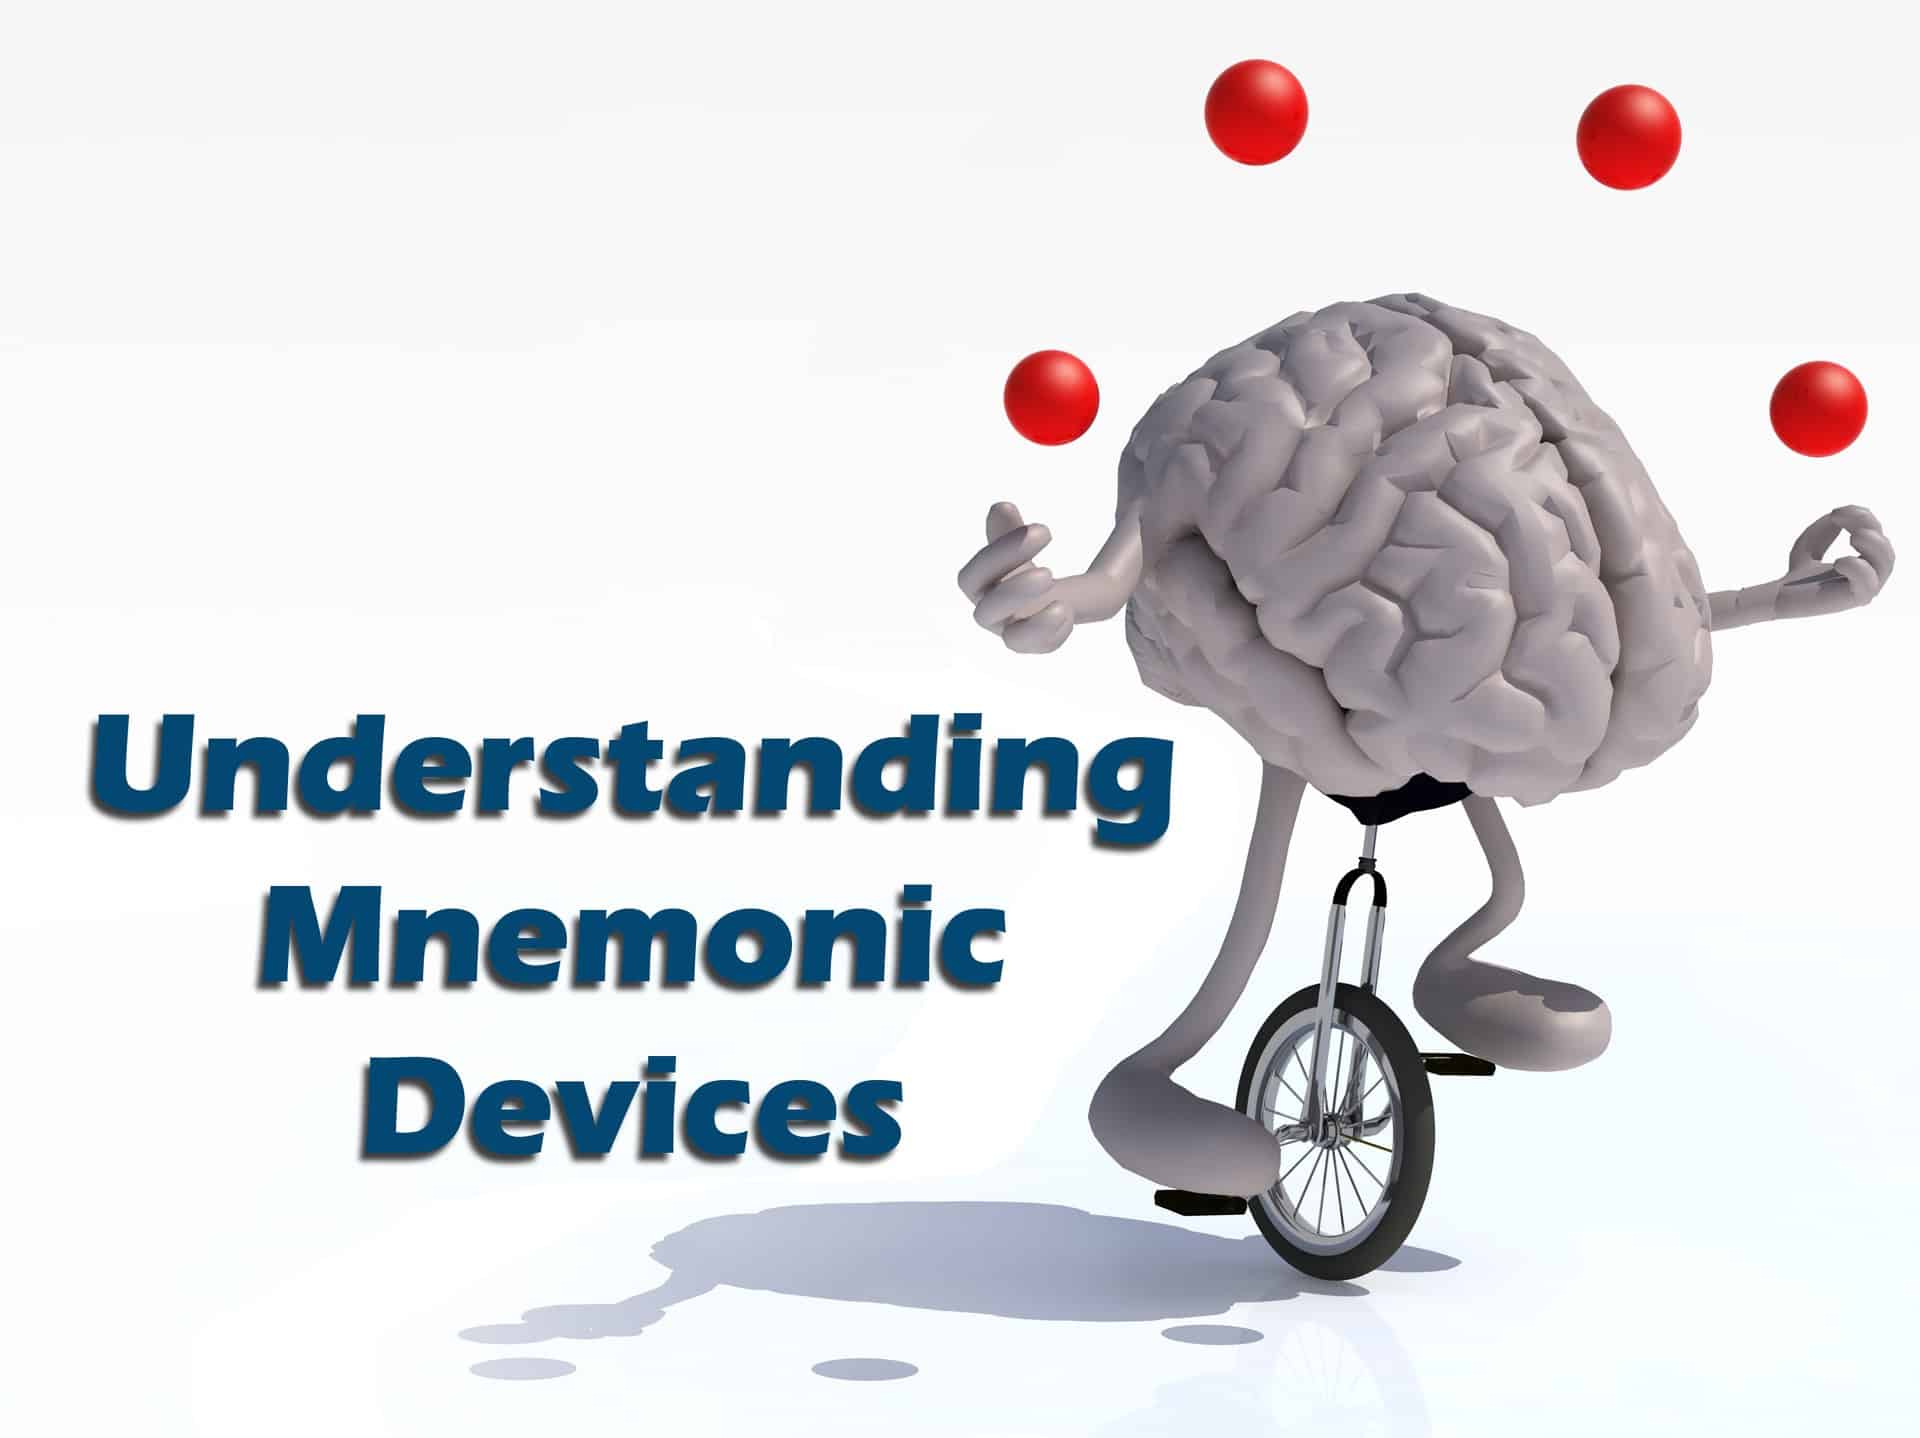 mnemonic devices